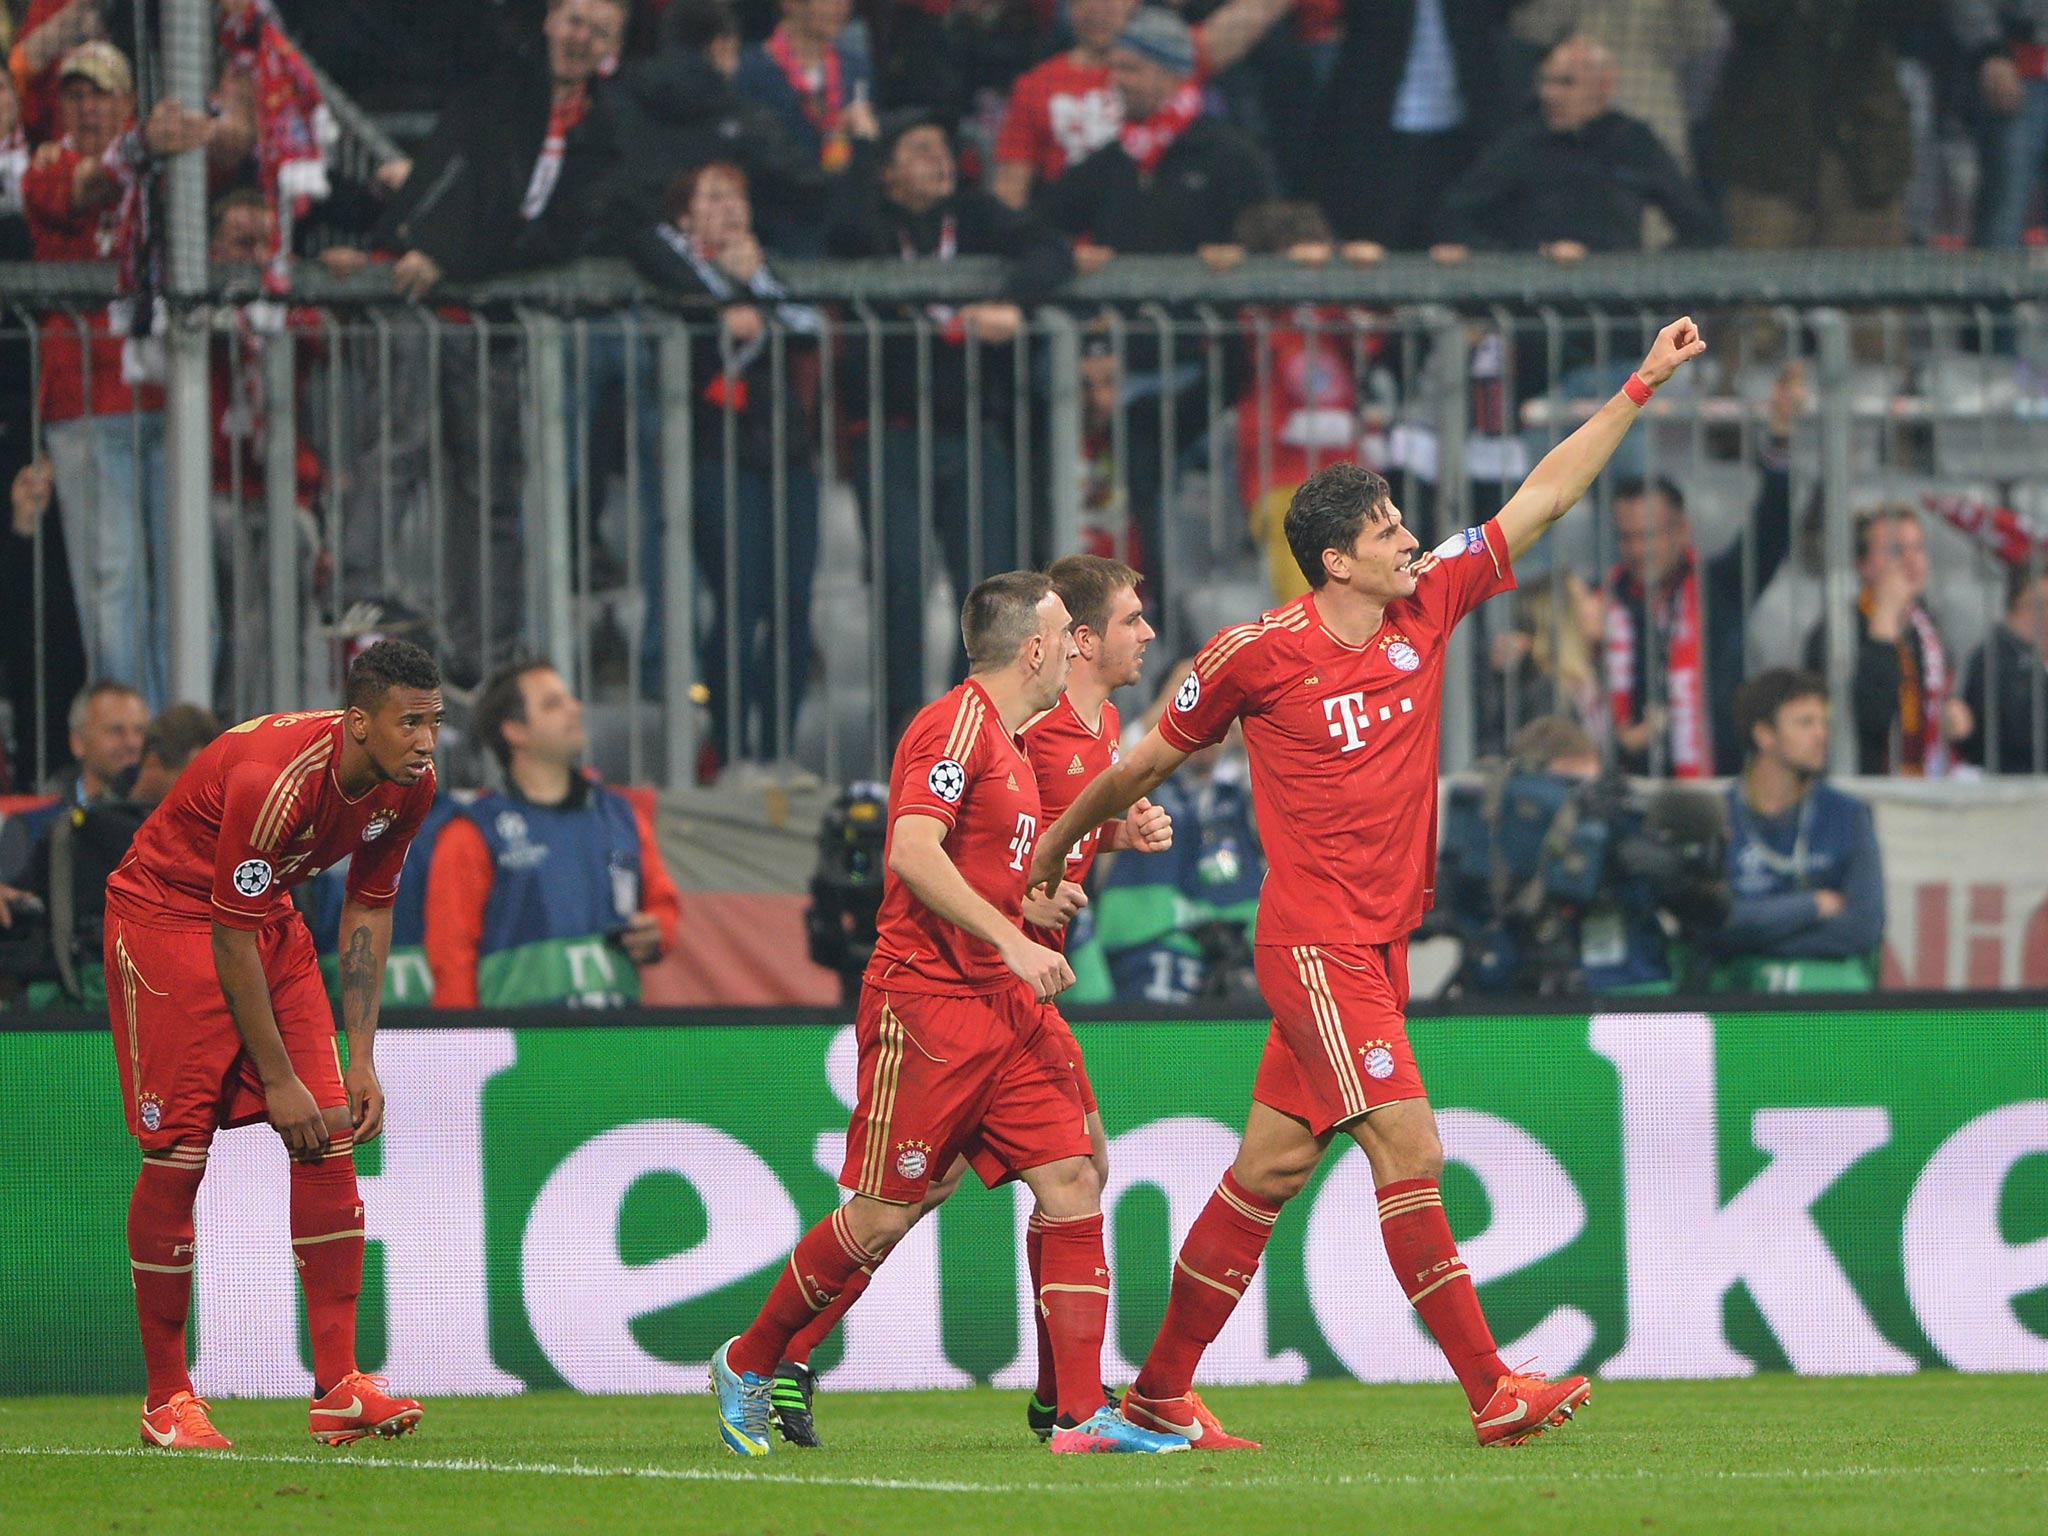 Mario Gomez celebrates his goal in Bayern's 4-0 win over Barcelona